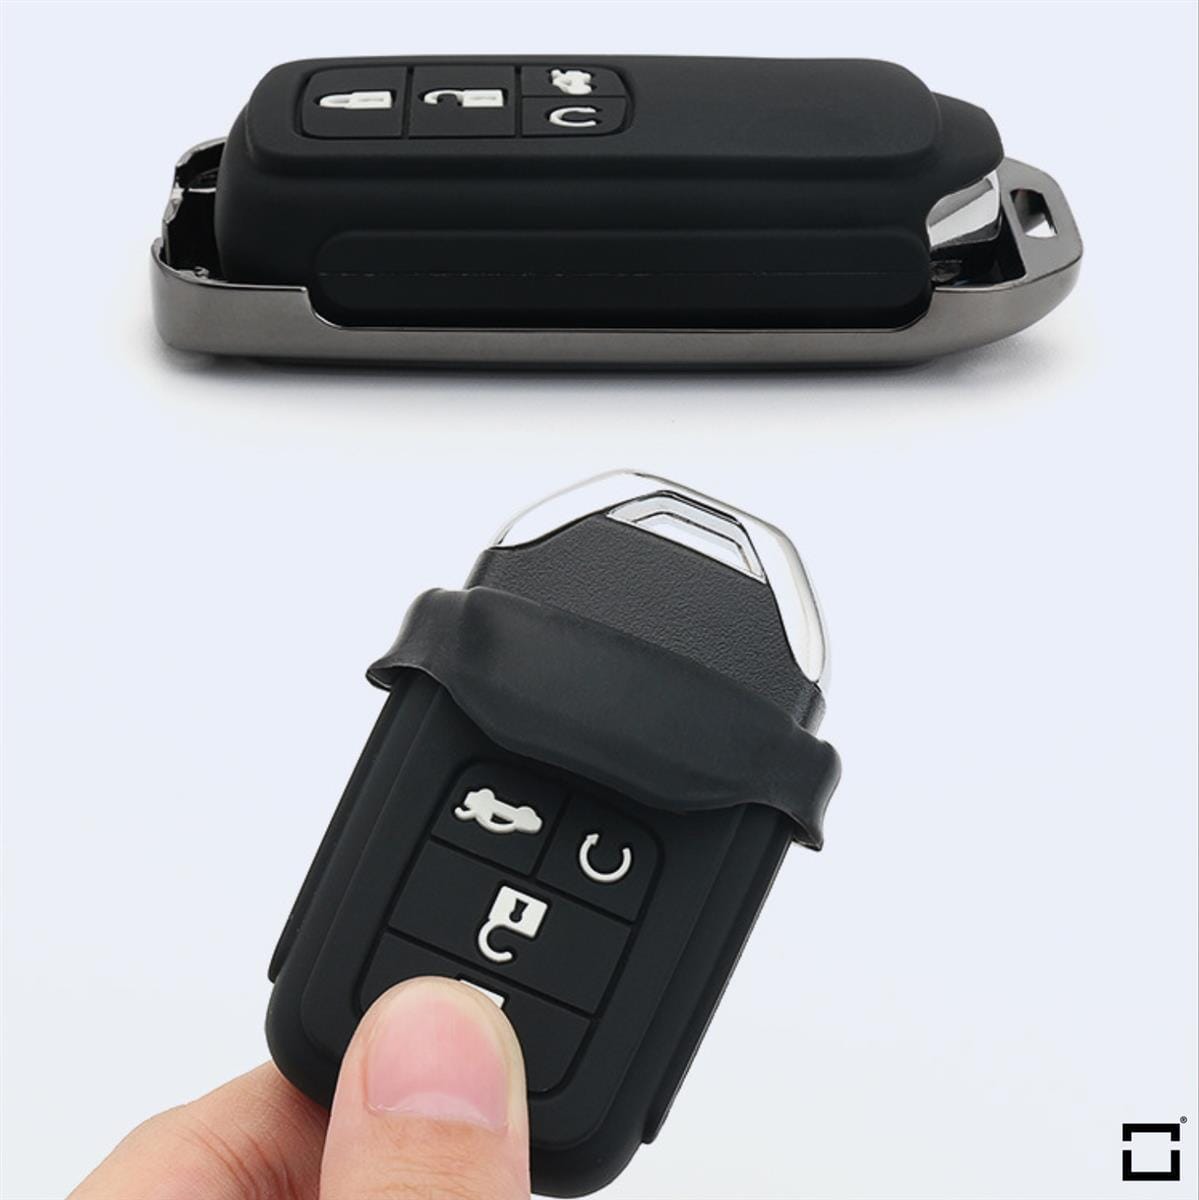 Schlüssel Cover mit Silikon Tastenabdeckung (Leuchtend) passend für Honda Autoschlüssel HEK54-H10-S114 keyholster.com | the case company 